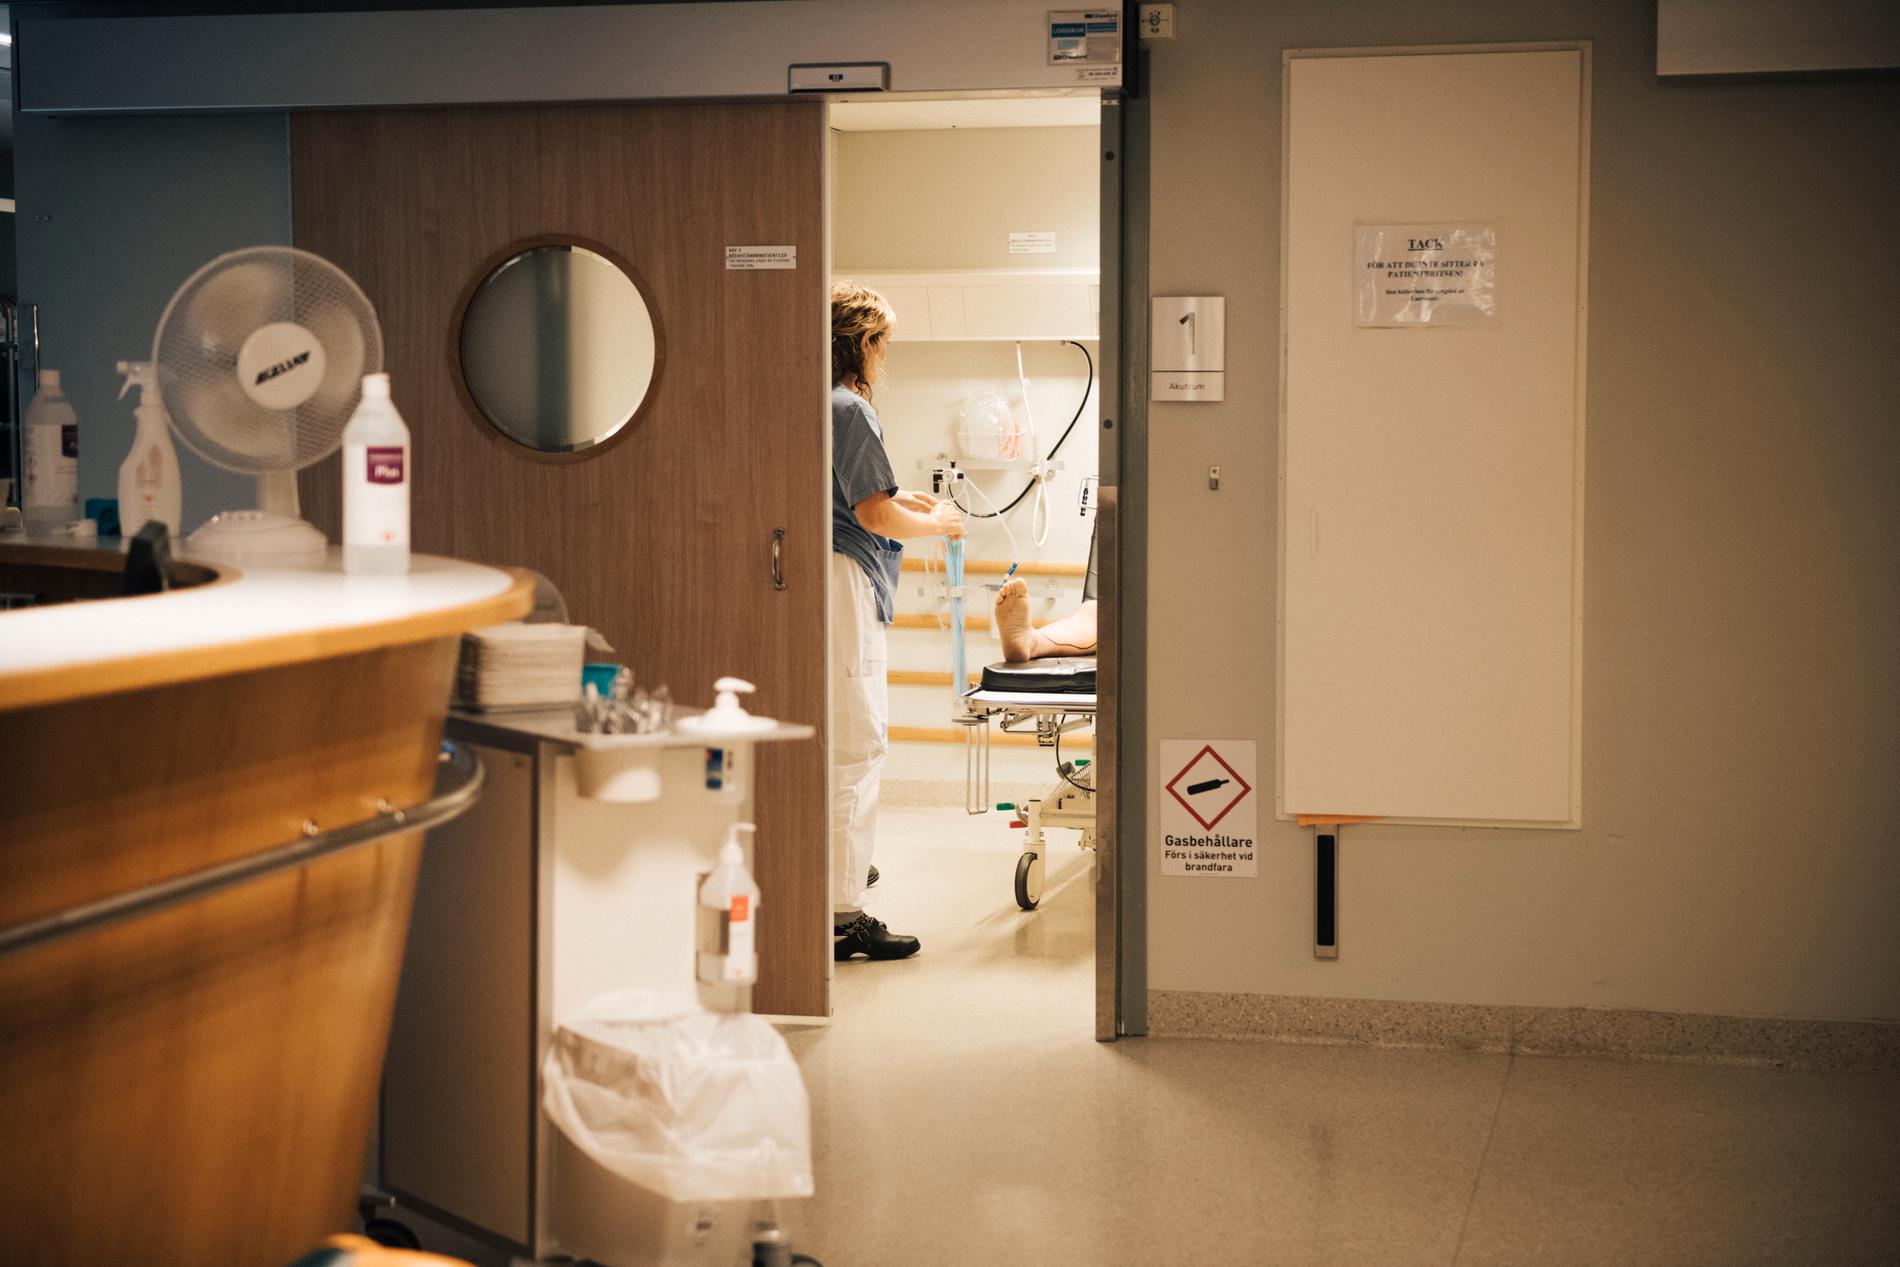 Patienter som inte får plats i rummen får ligga i korridoren – eller i det fruktade ”Exit Lounge”.